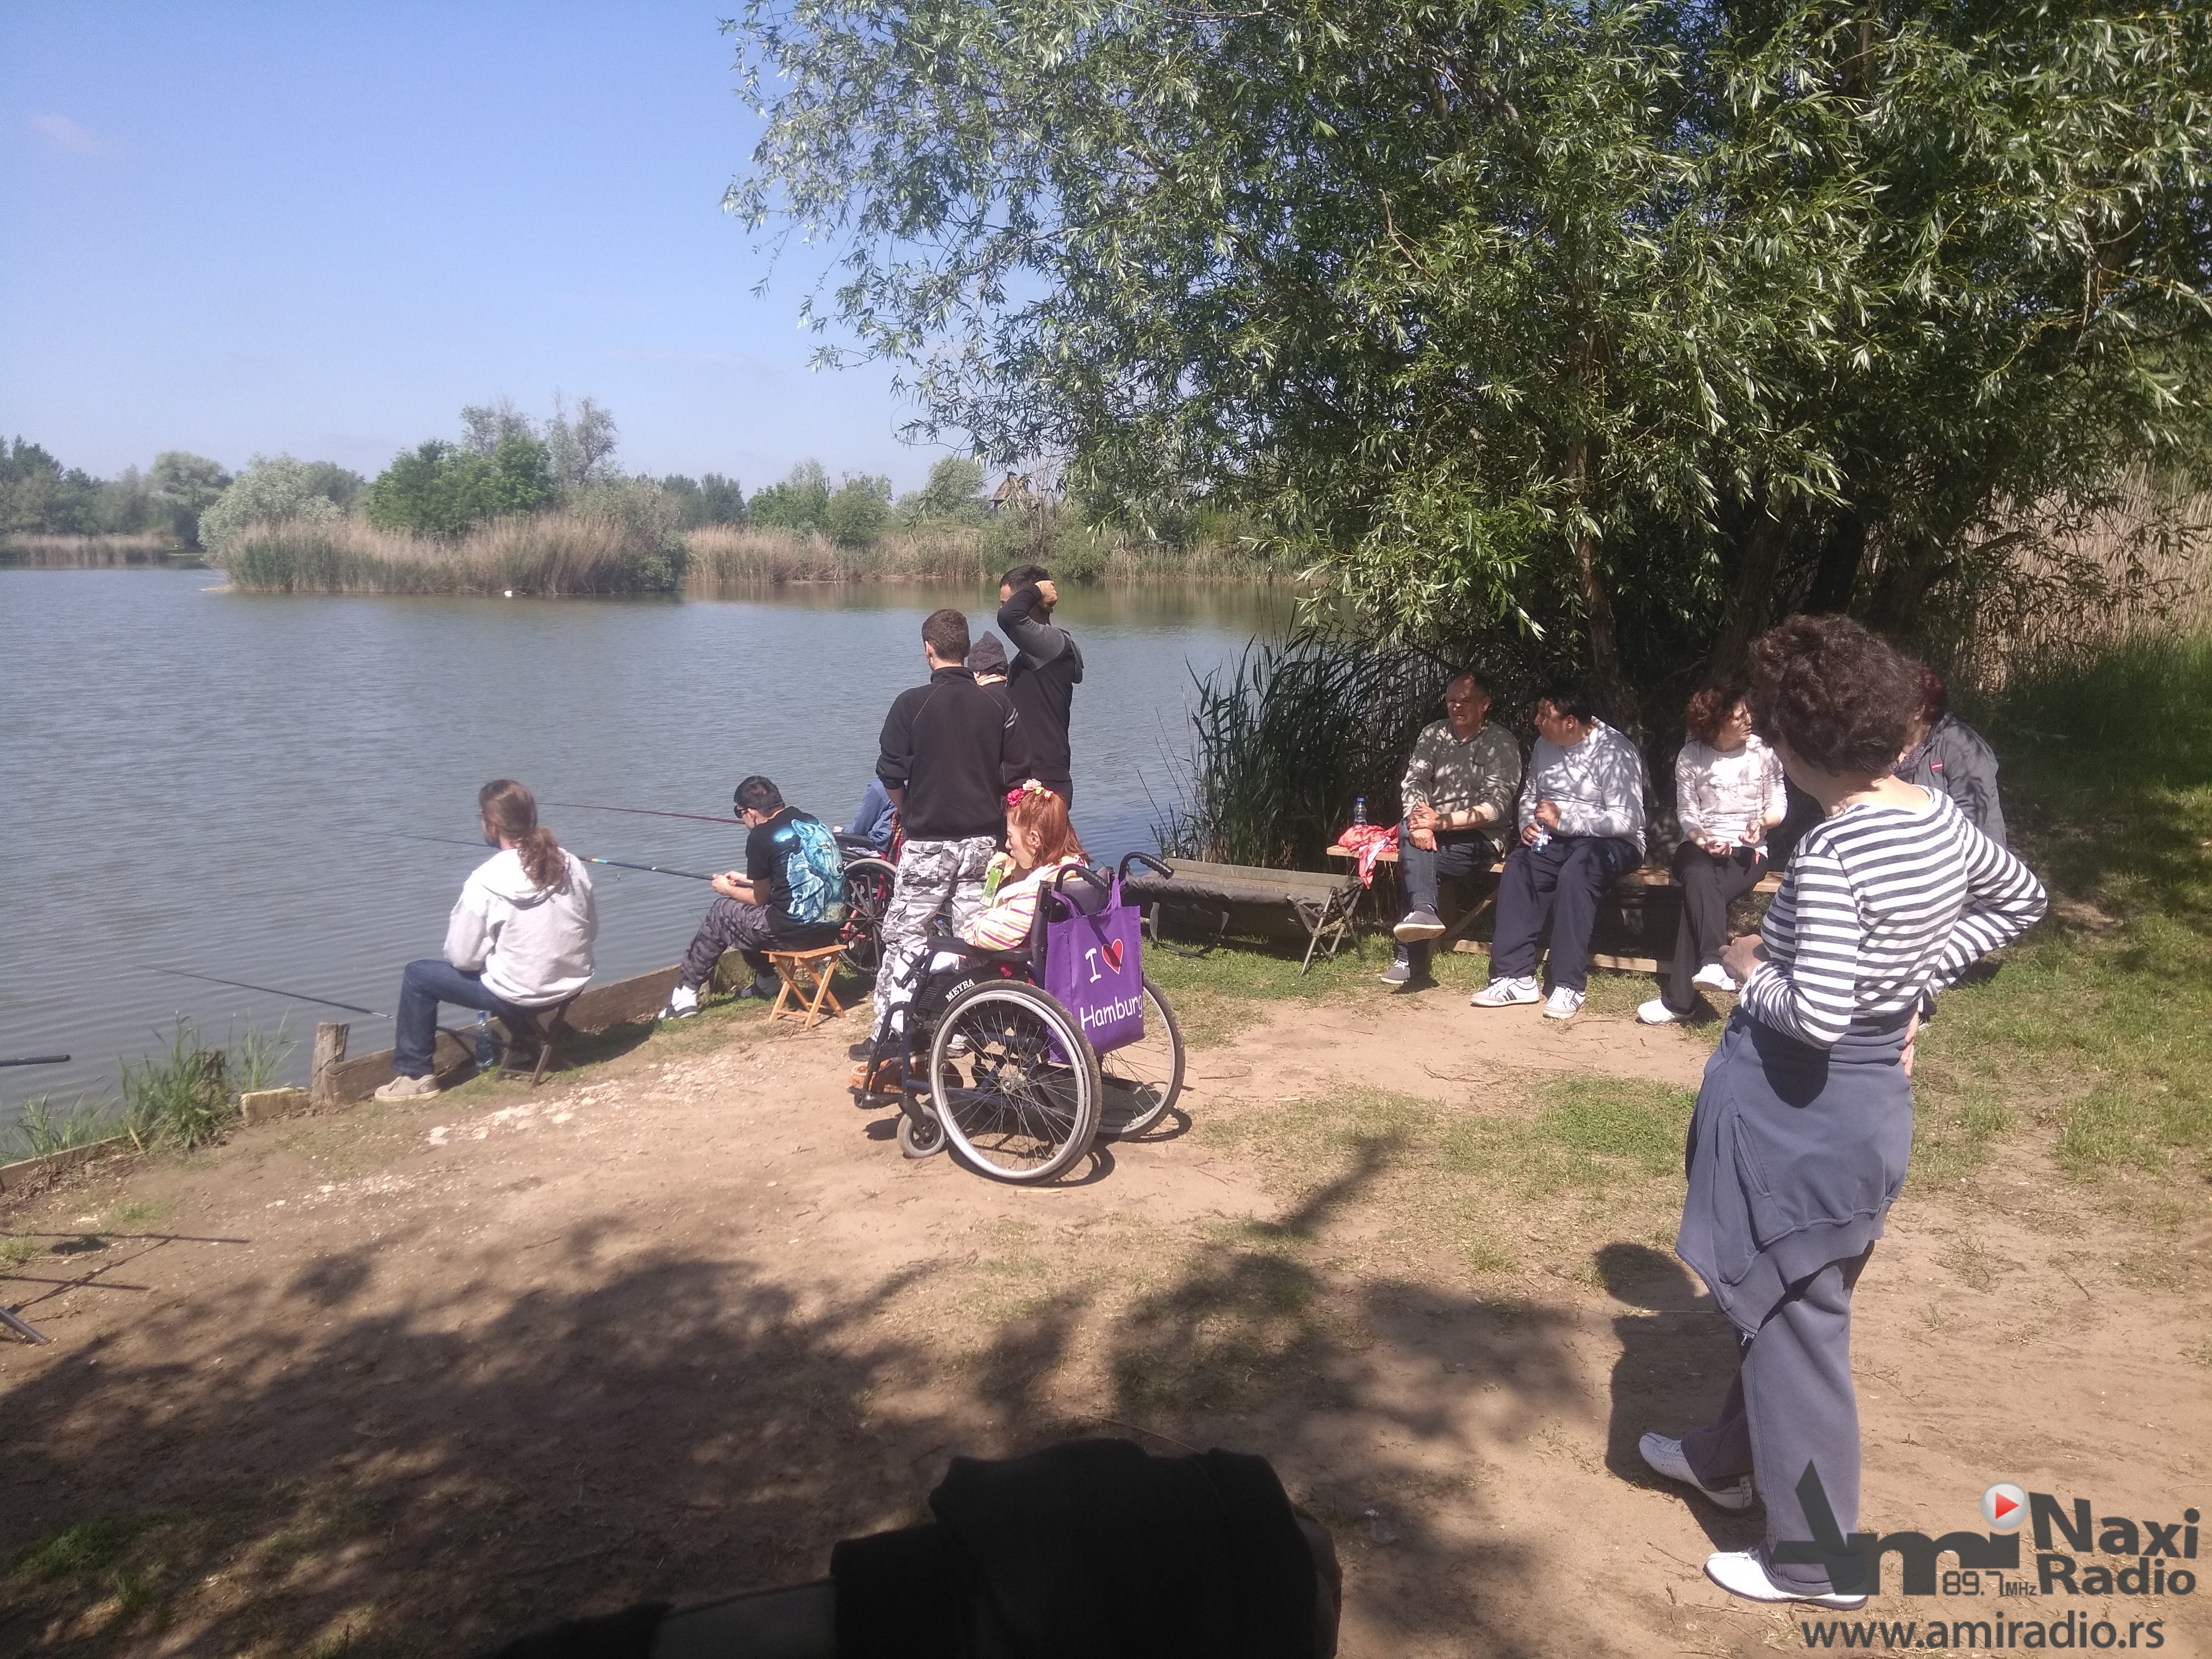 Sedmi ribolovački kamp za decu sa posebnim potrebama – Udruženje “Šaran“ obradovalo sugrađane